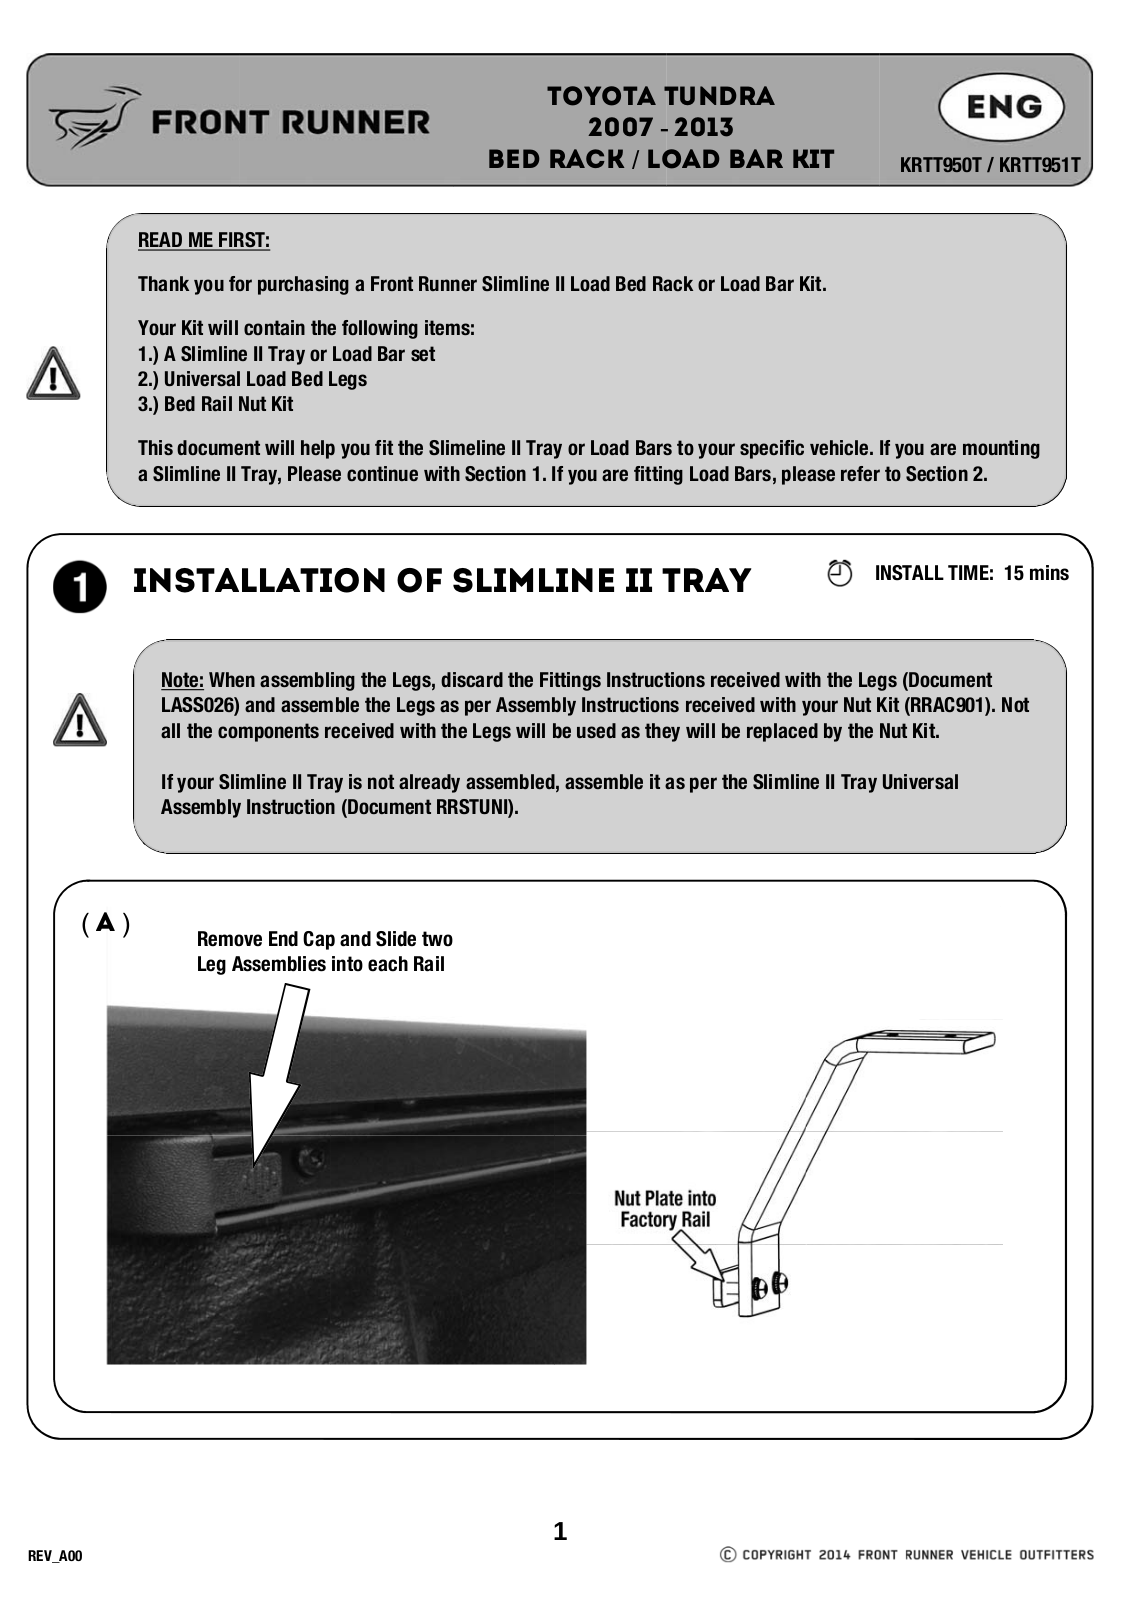 Installation instructions for KRTT950T